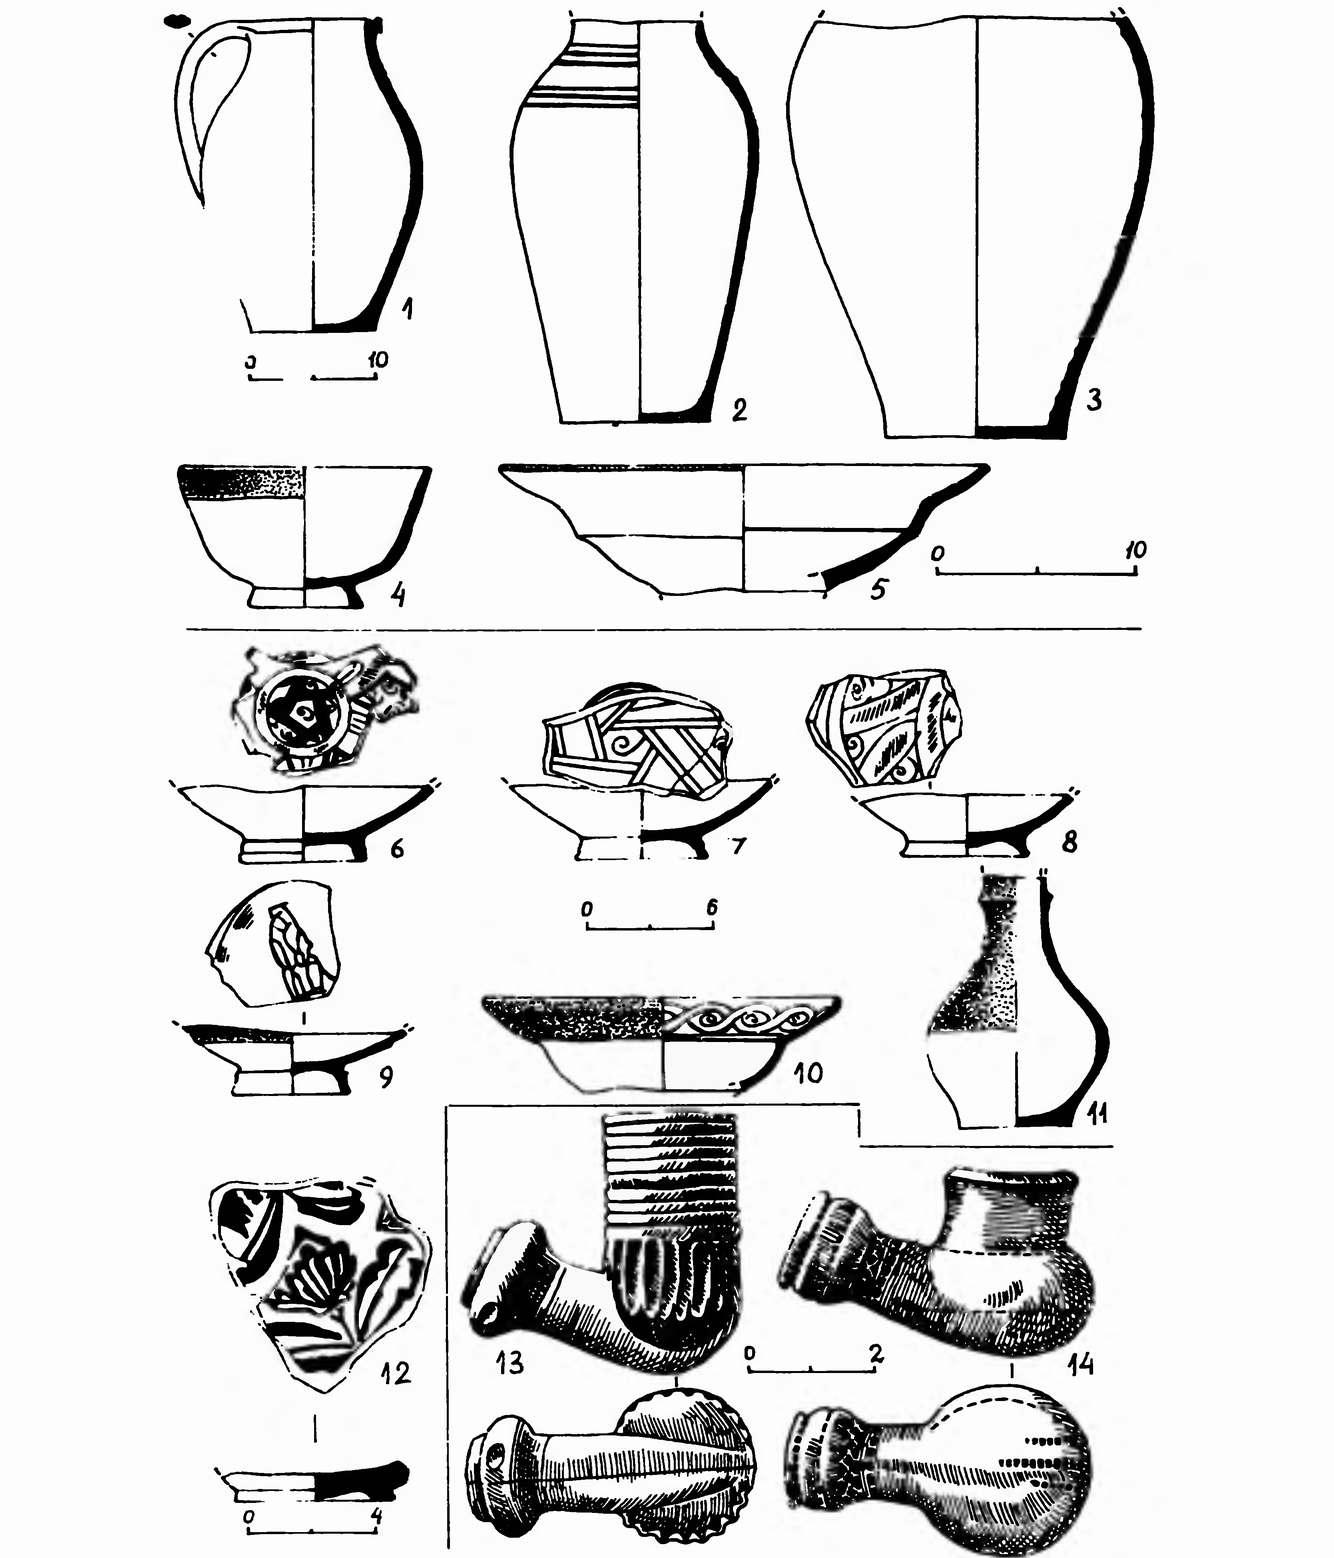 Раскоп 2, материал заполнения ямы 3 (1—5), ямы 1 (6—11), двора усадьбы (13—14)